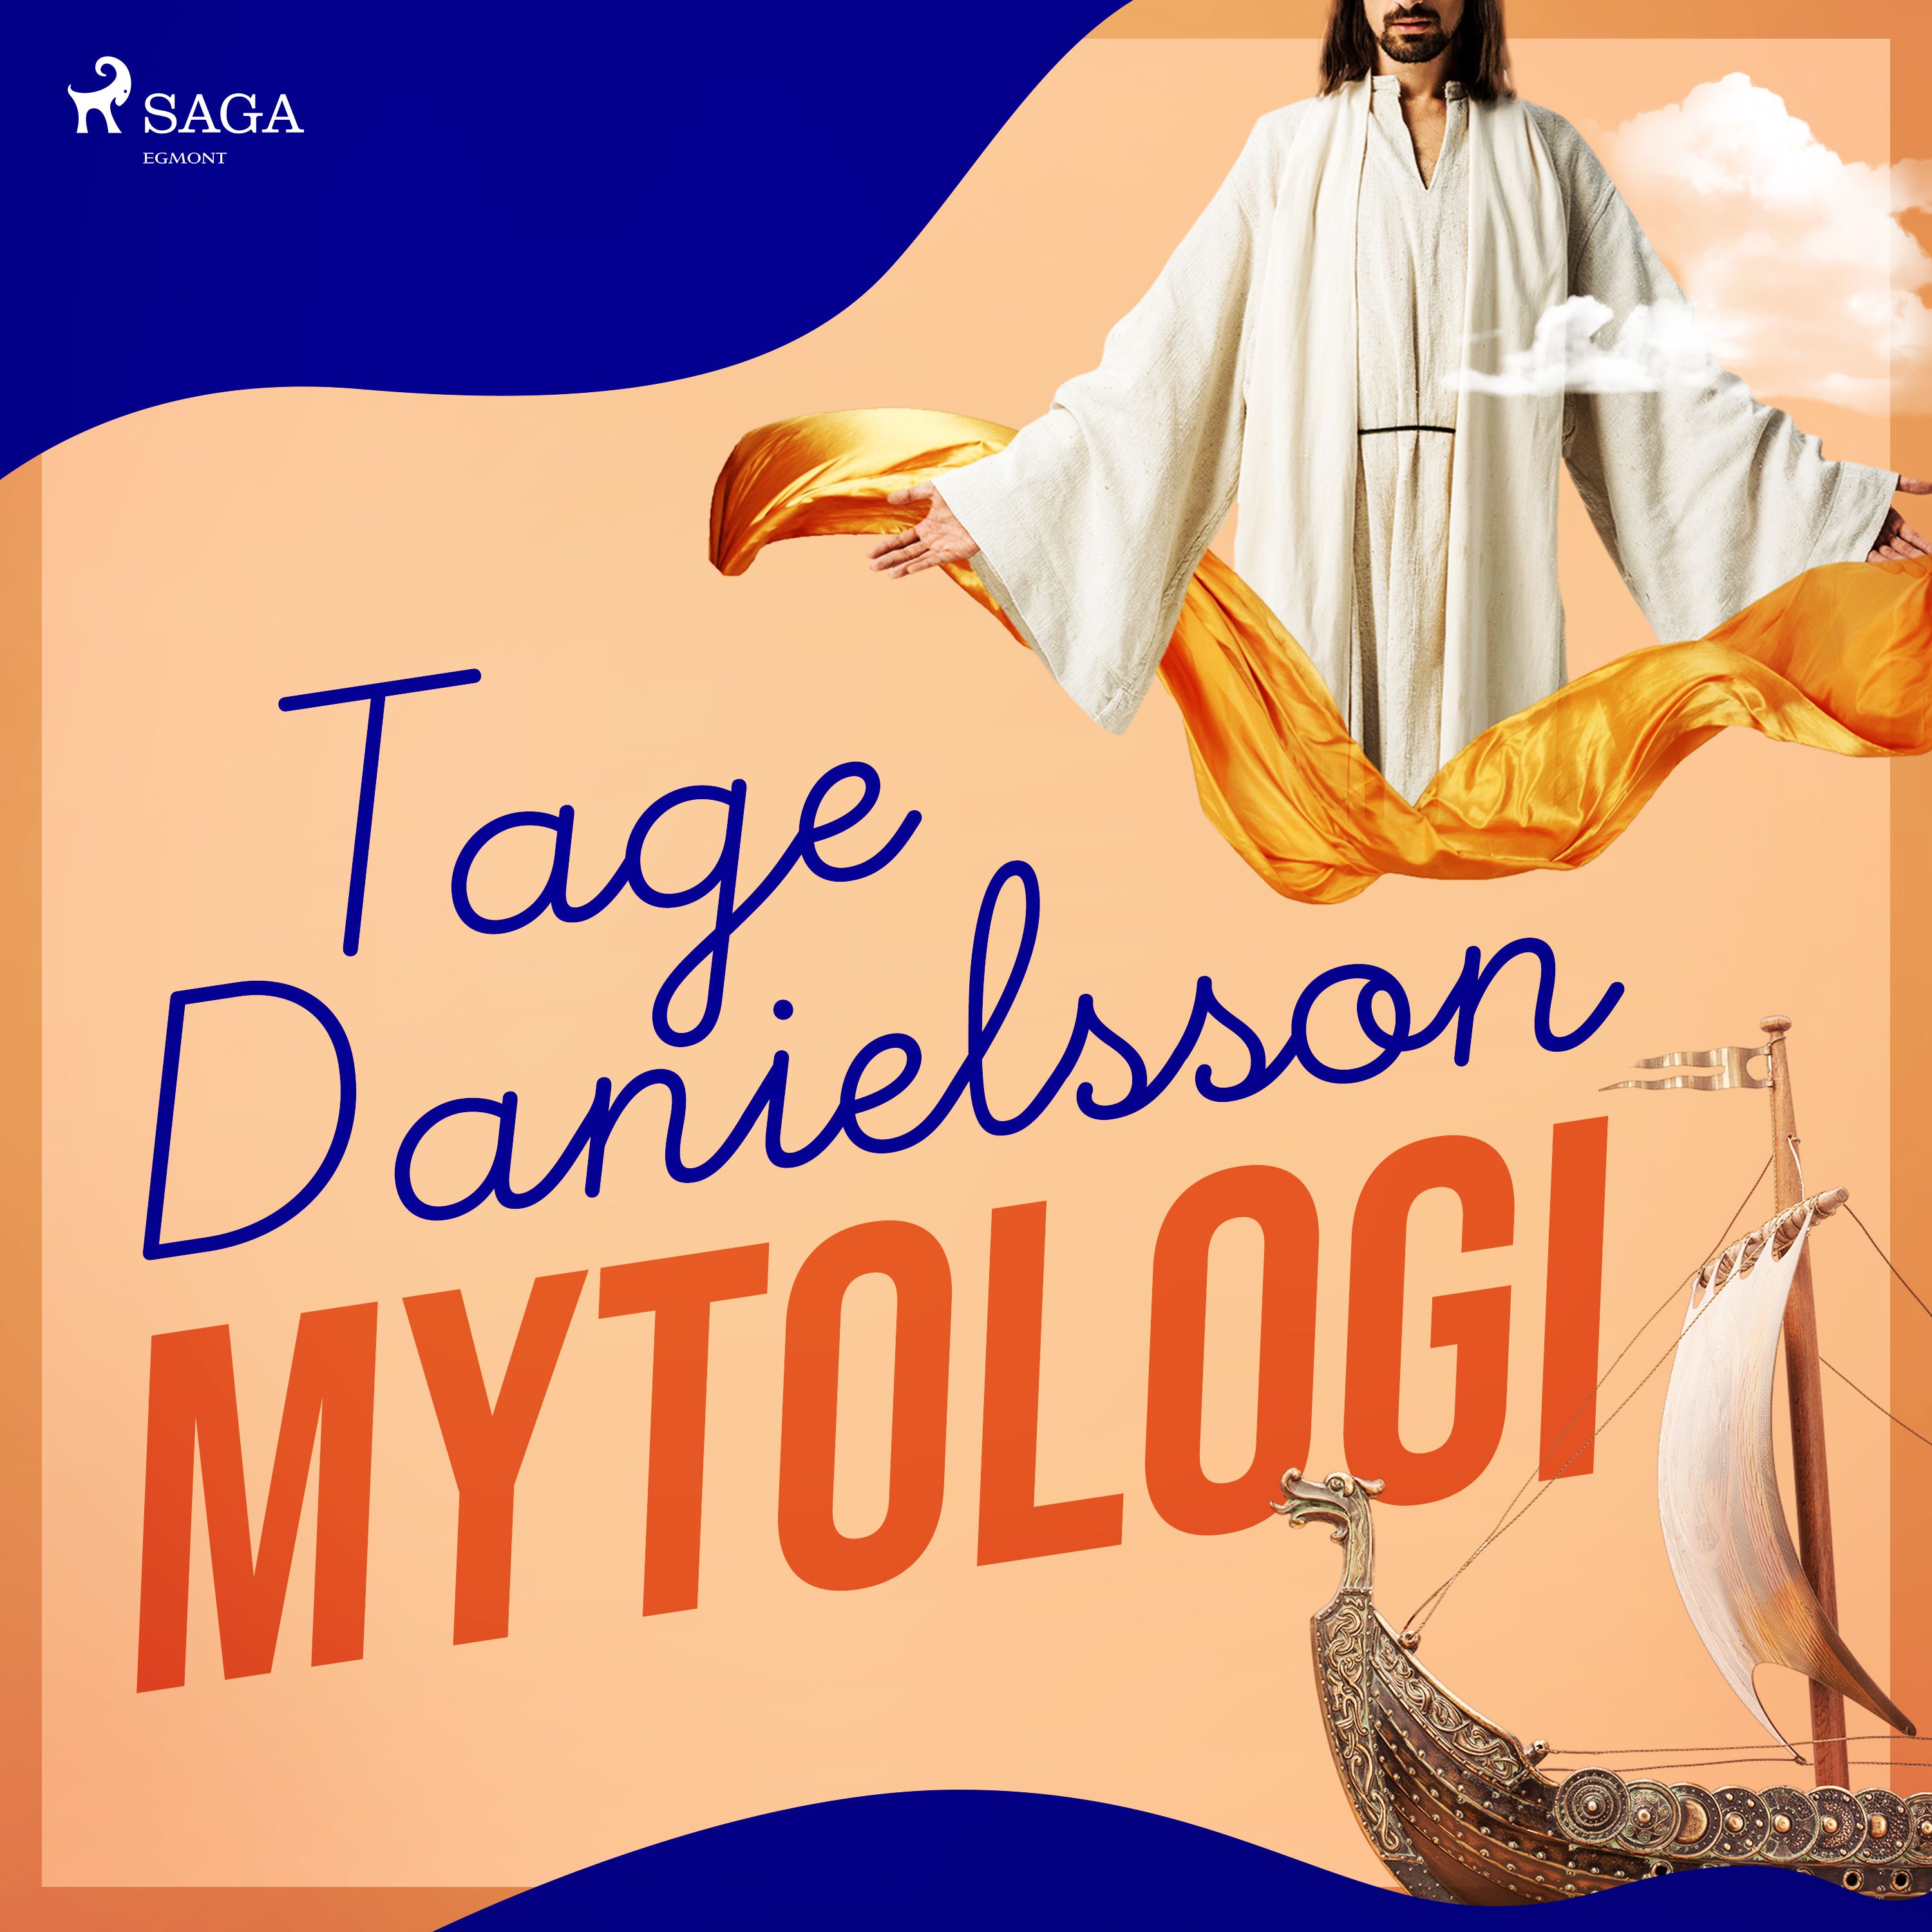 Mytologi, ljudbok av Tage Danielsson